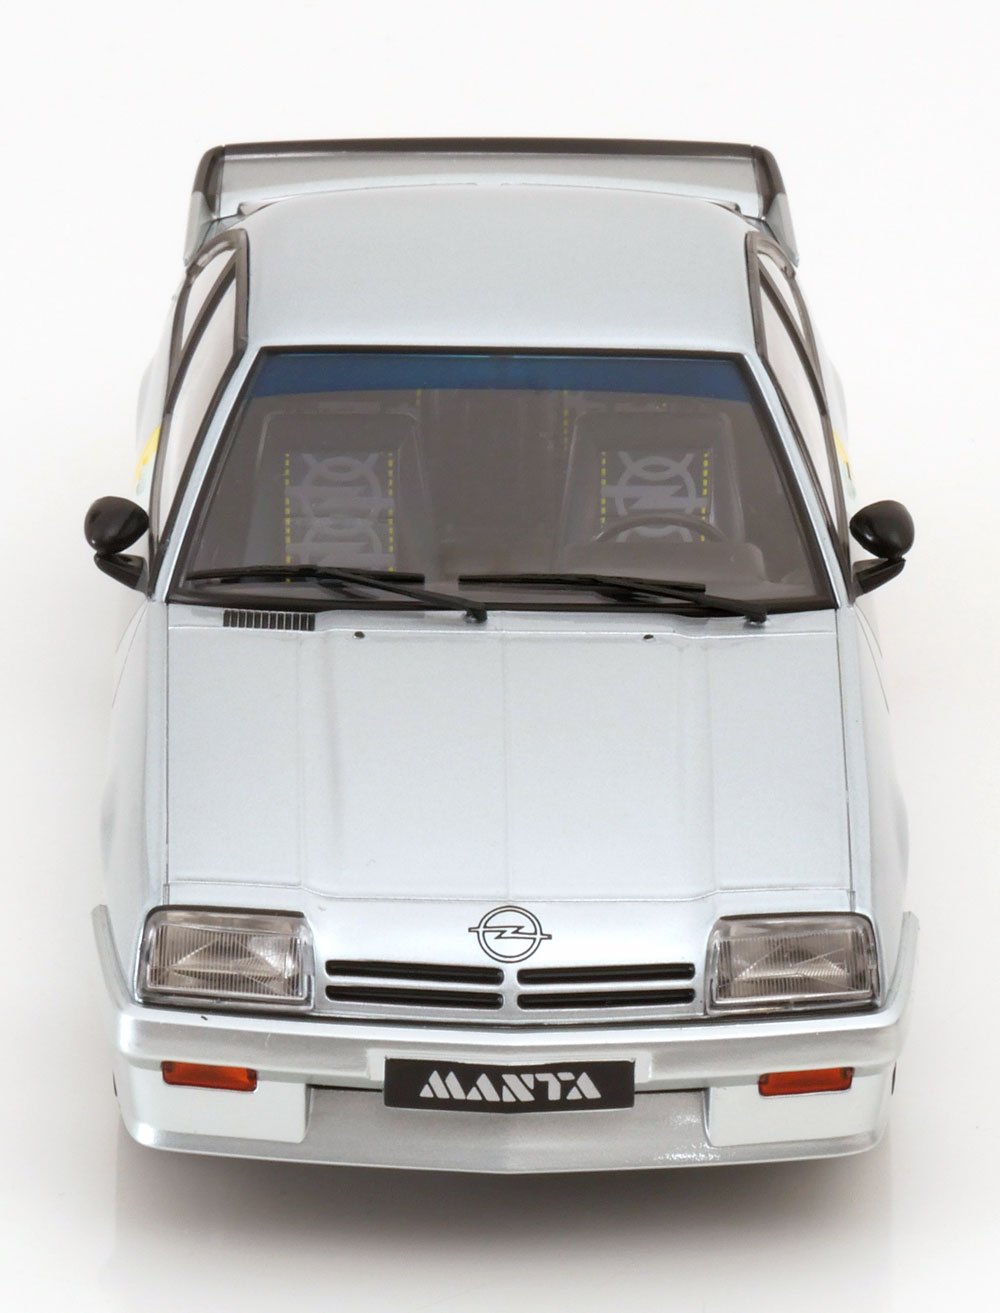 1:18 Norev Opel Manta i240 1985 silver